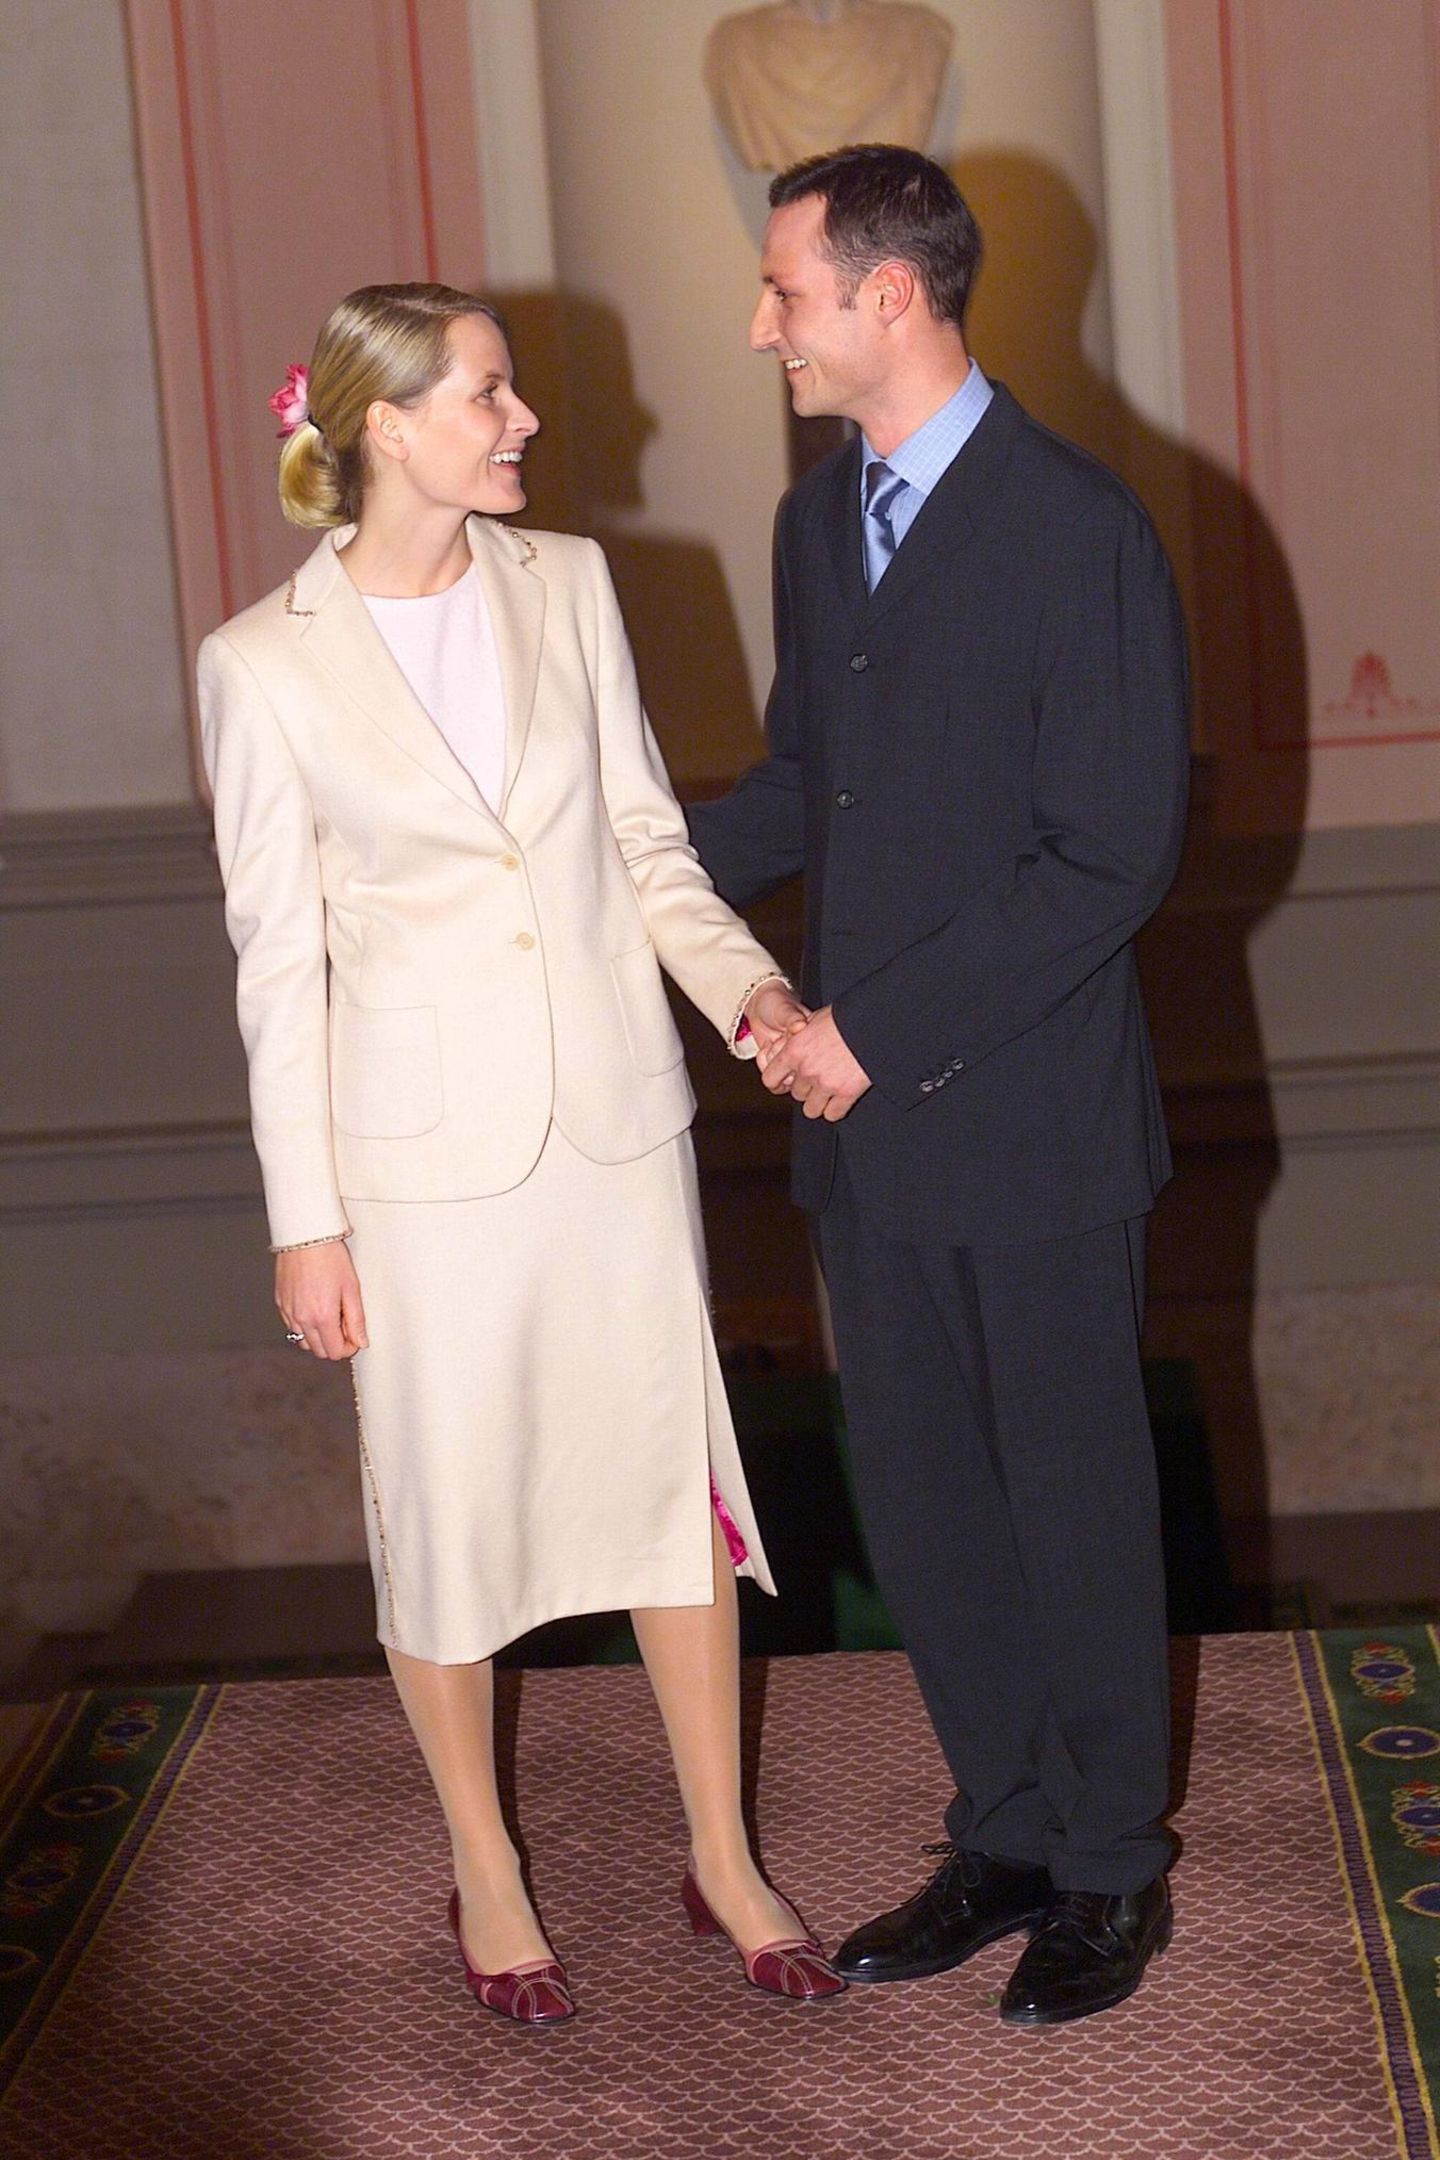 21. Januar 2000  Ganz zurückhaltend zeigt sich Mette-Marit bei ihrer Verlobung mit dem norwegischen Kronprinzen Haakon im beigefarbenen Kostüm. Ein schönes Detail ist aber die Rose, die in ihrem eleganten Chignon steckt.